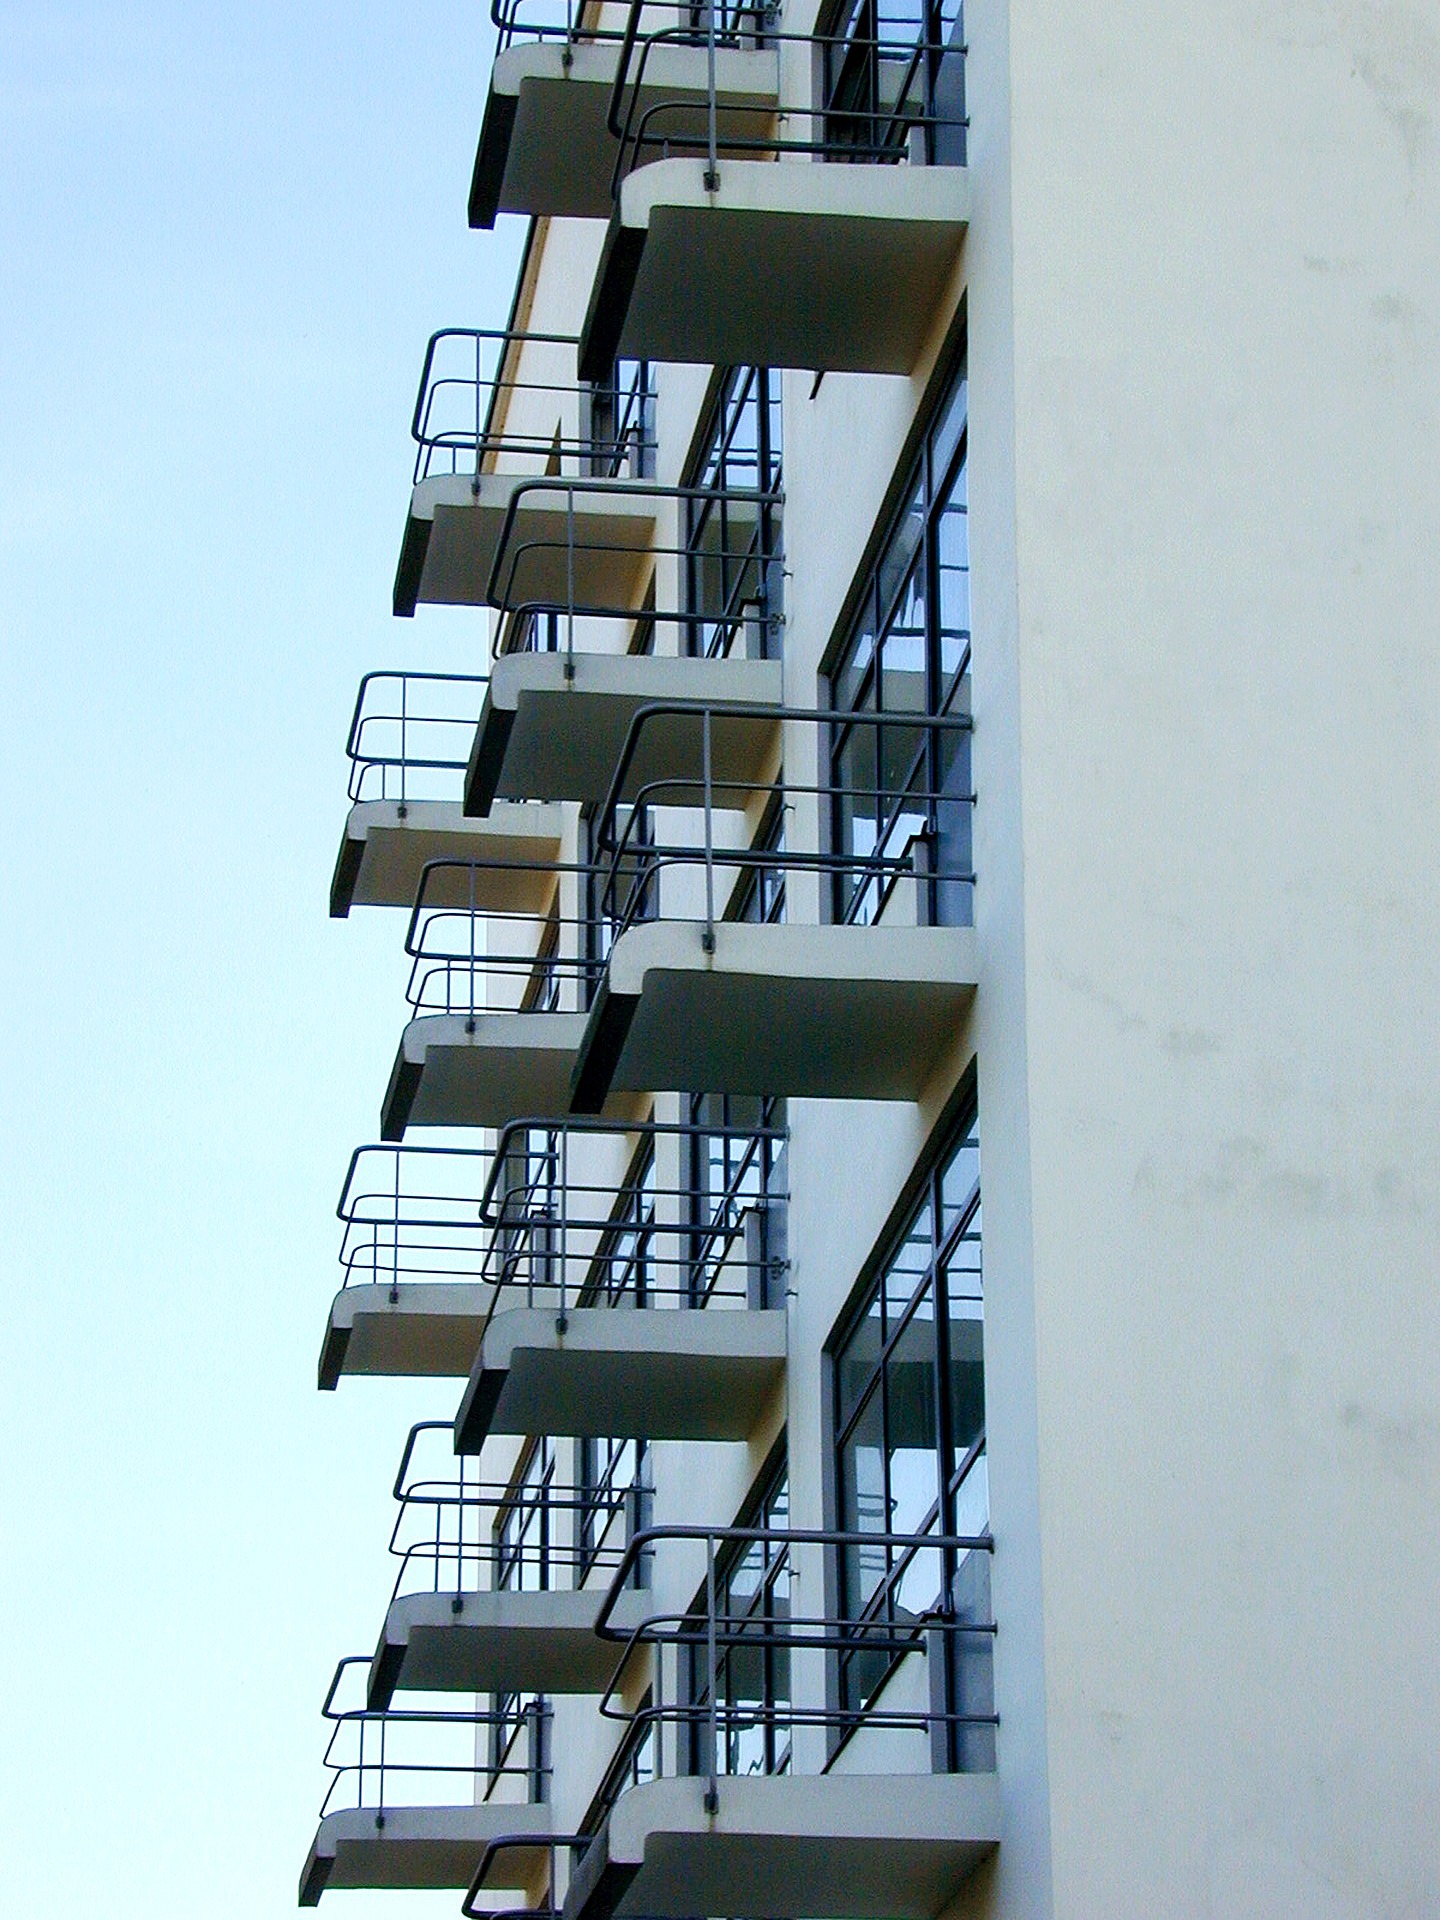 Fasáda ateliérového domu, součást komplexu Bauhaus (Dessau, Německo)